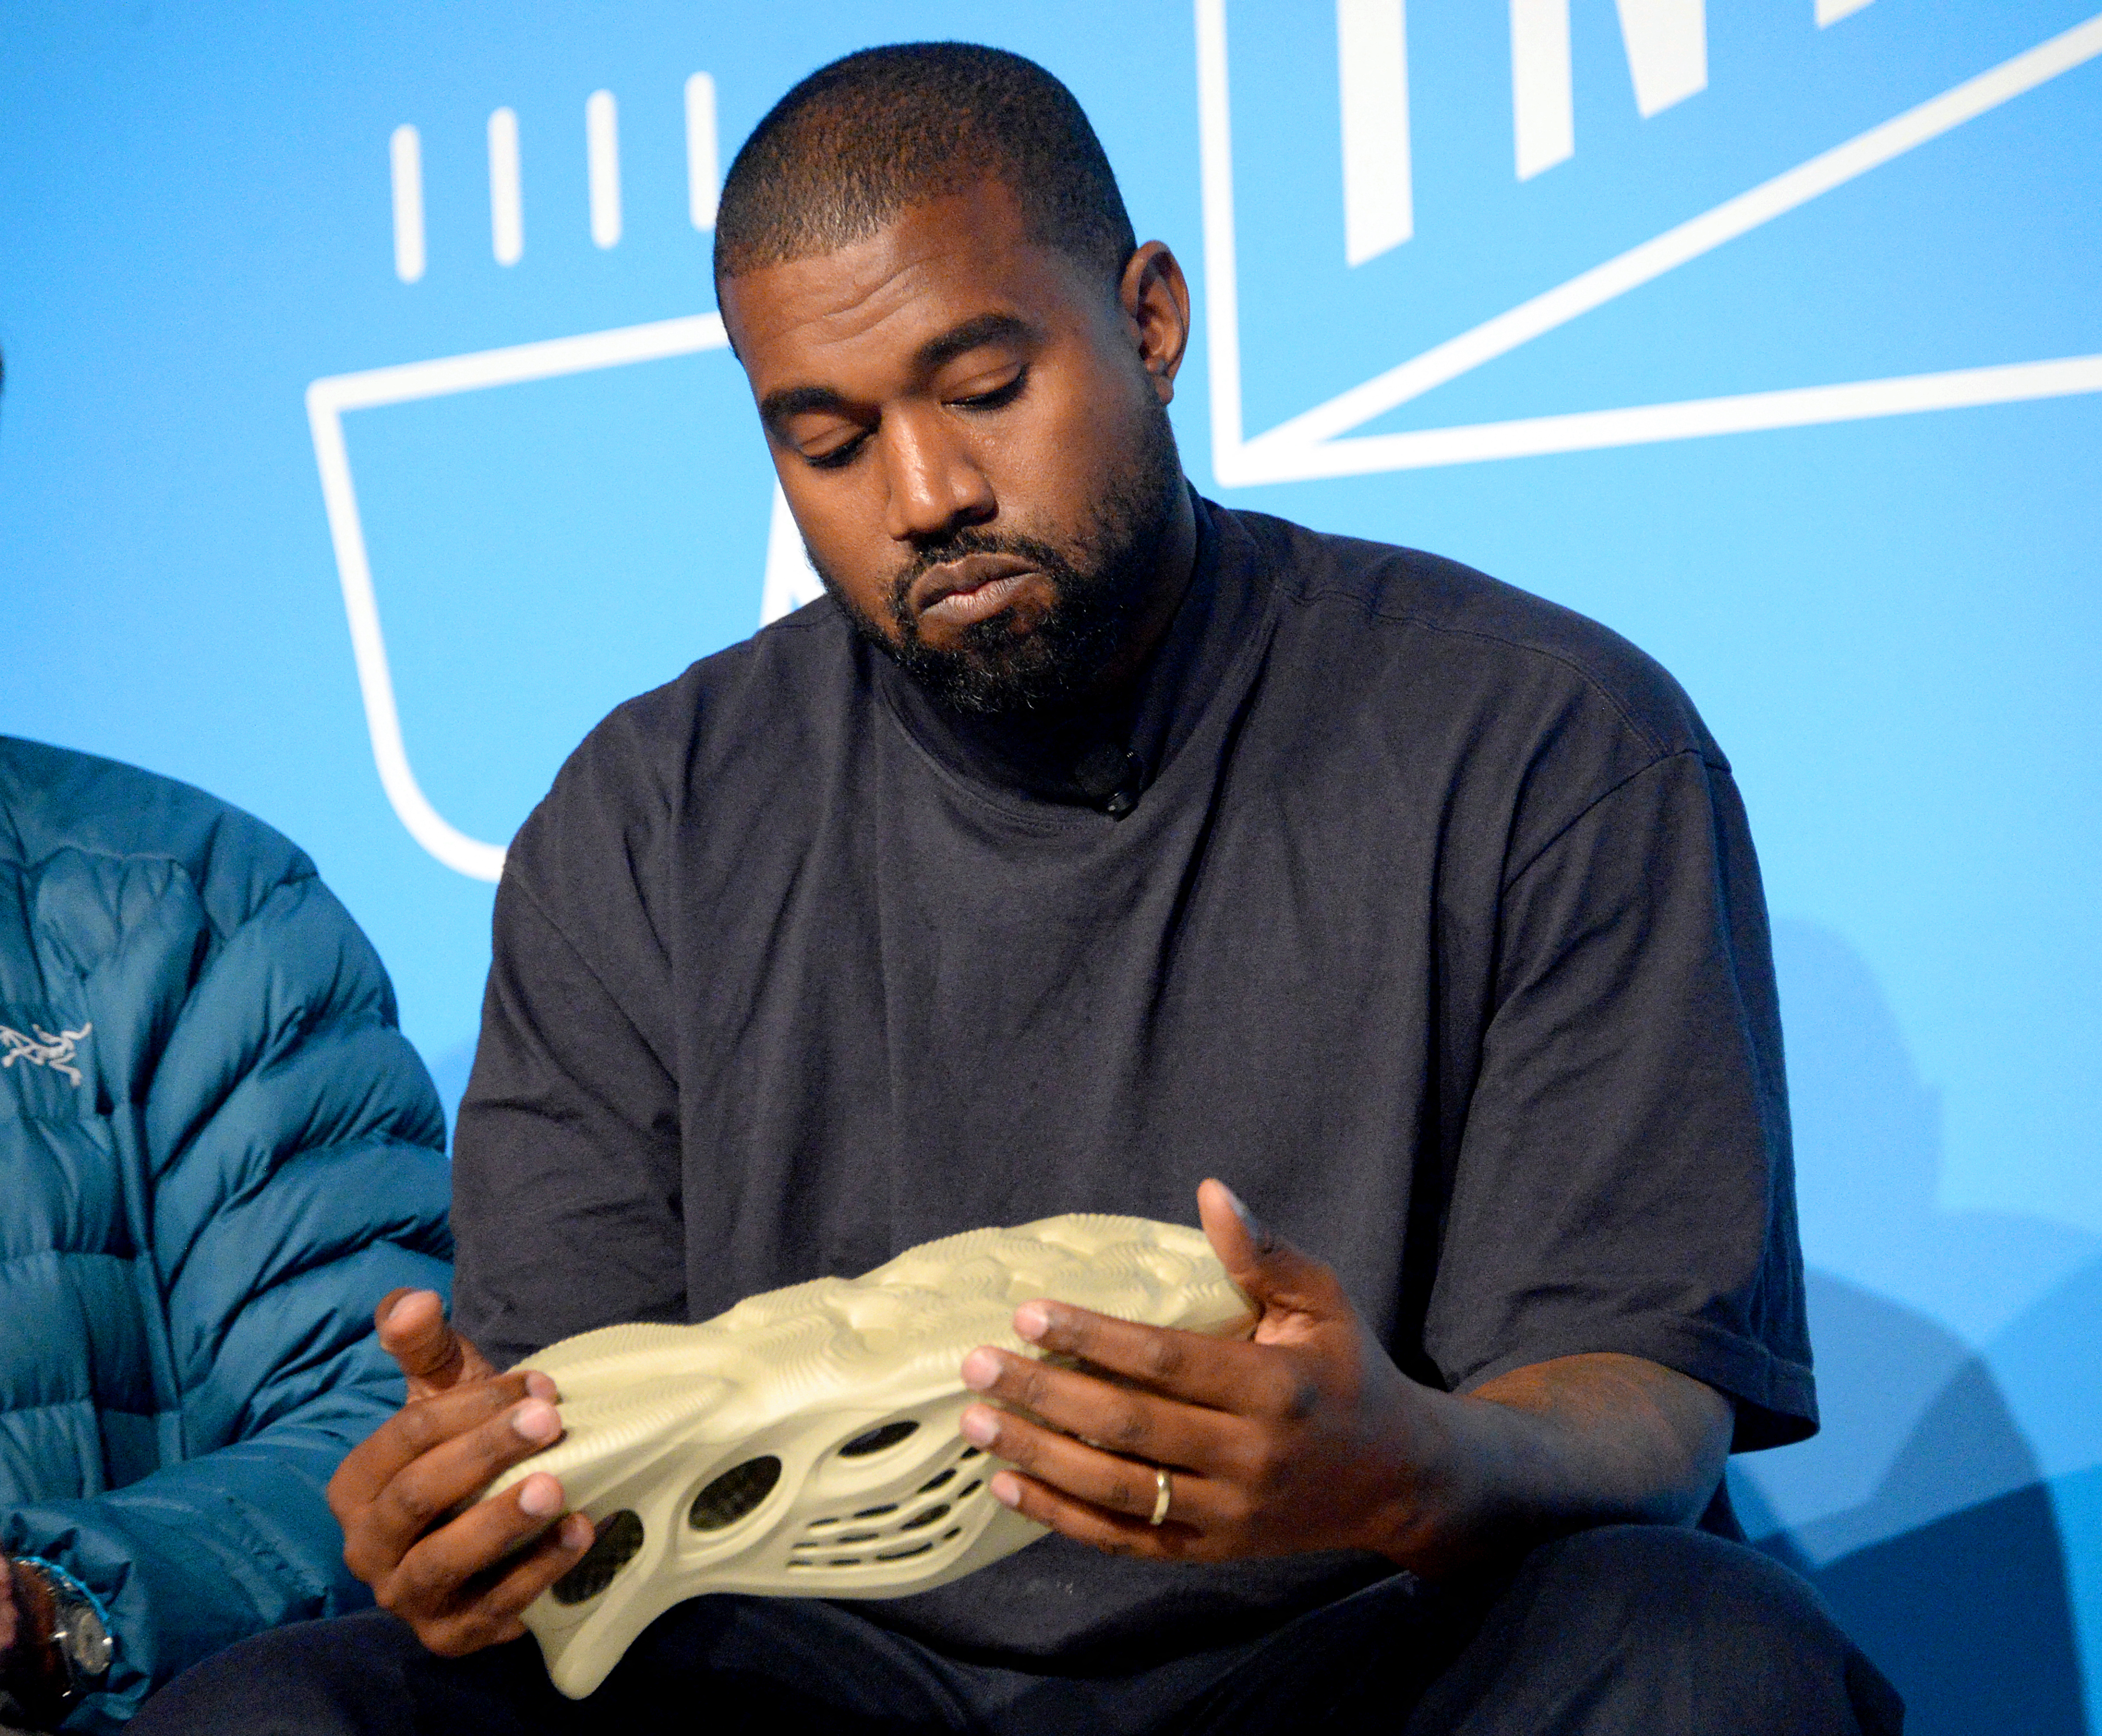 A JP Morgan Chase megszakítja a kapcsolatot Kanye Westtel